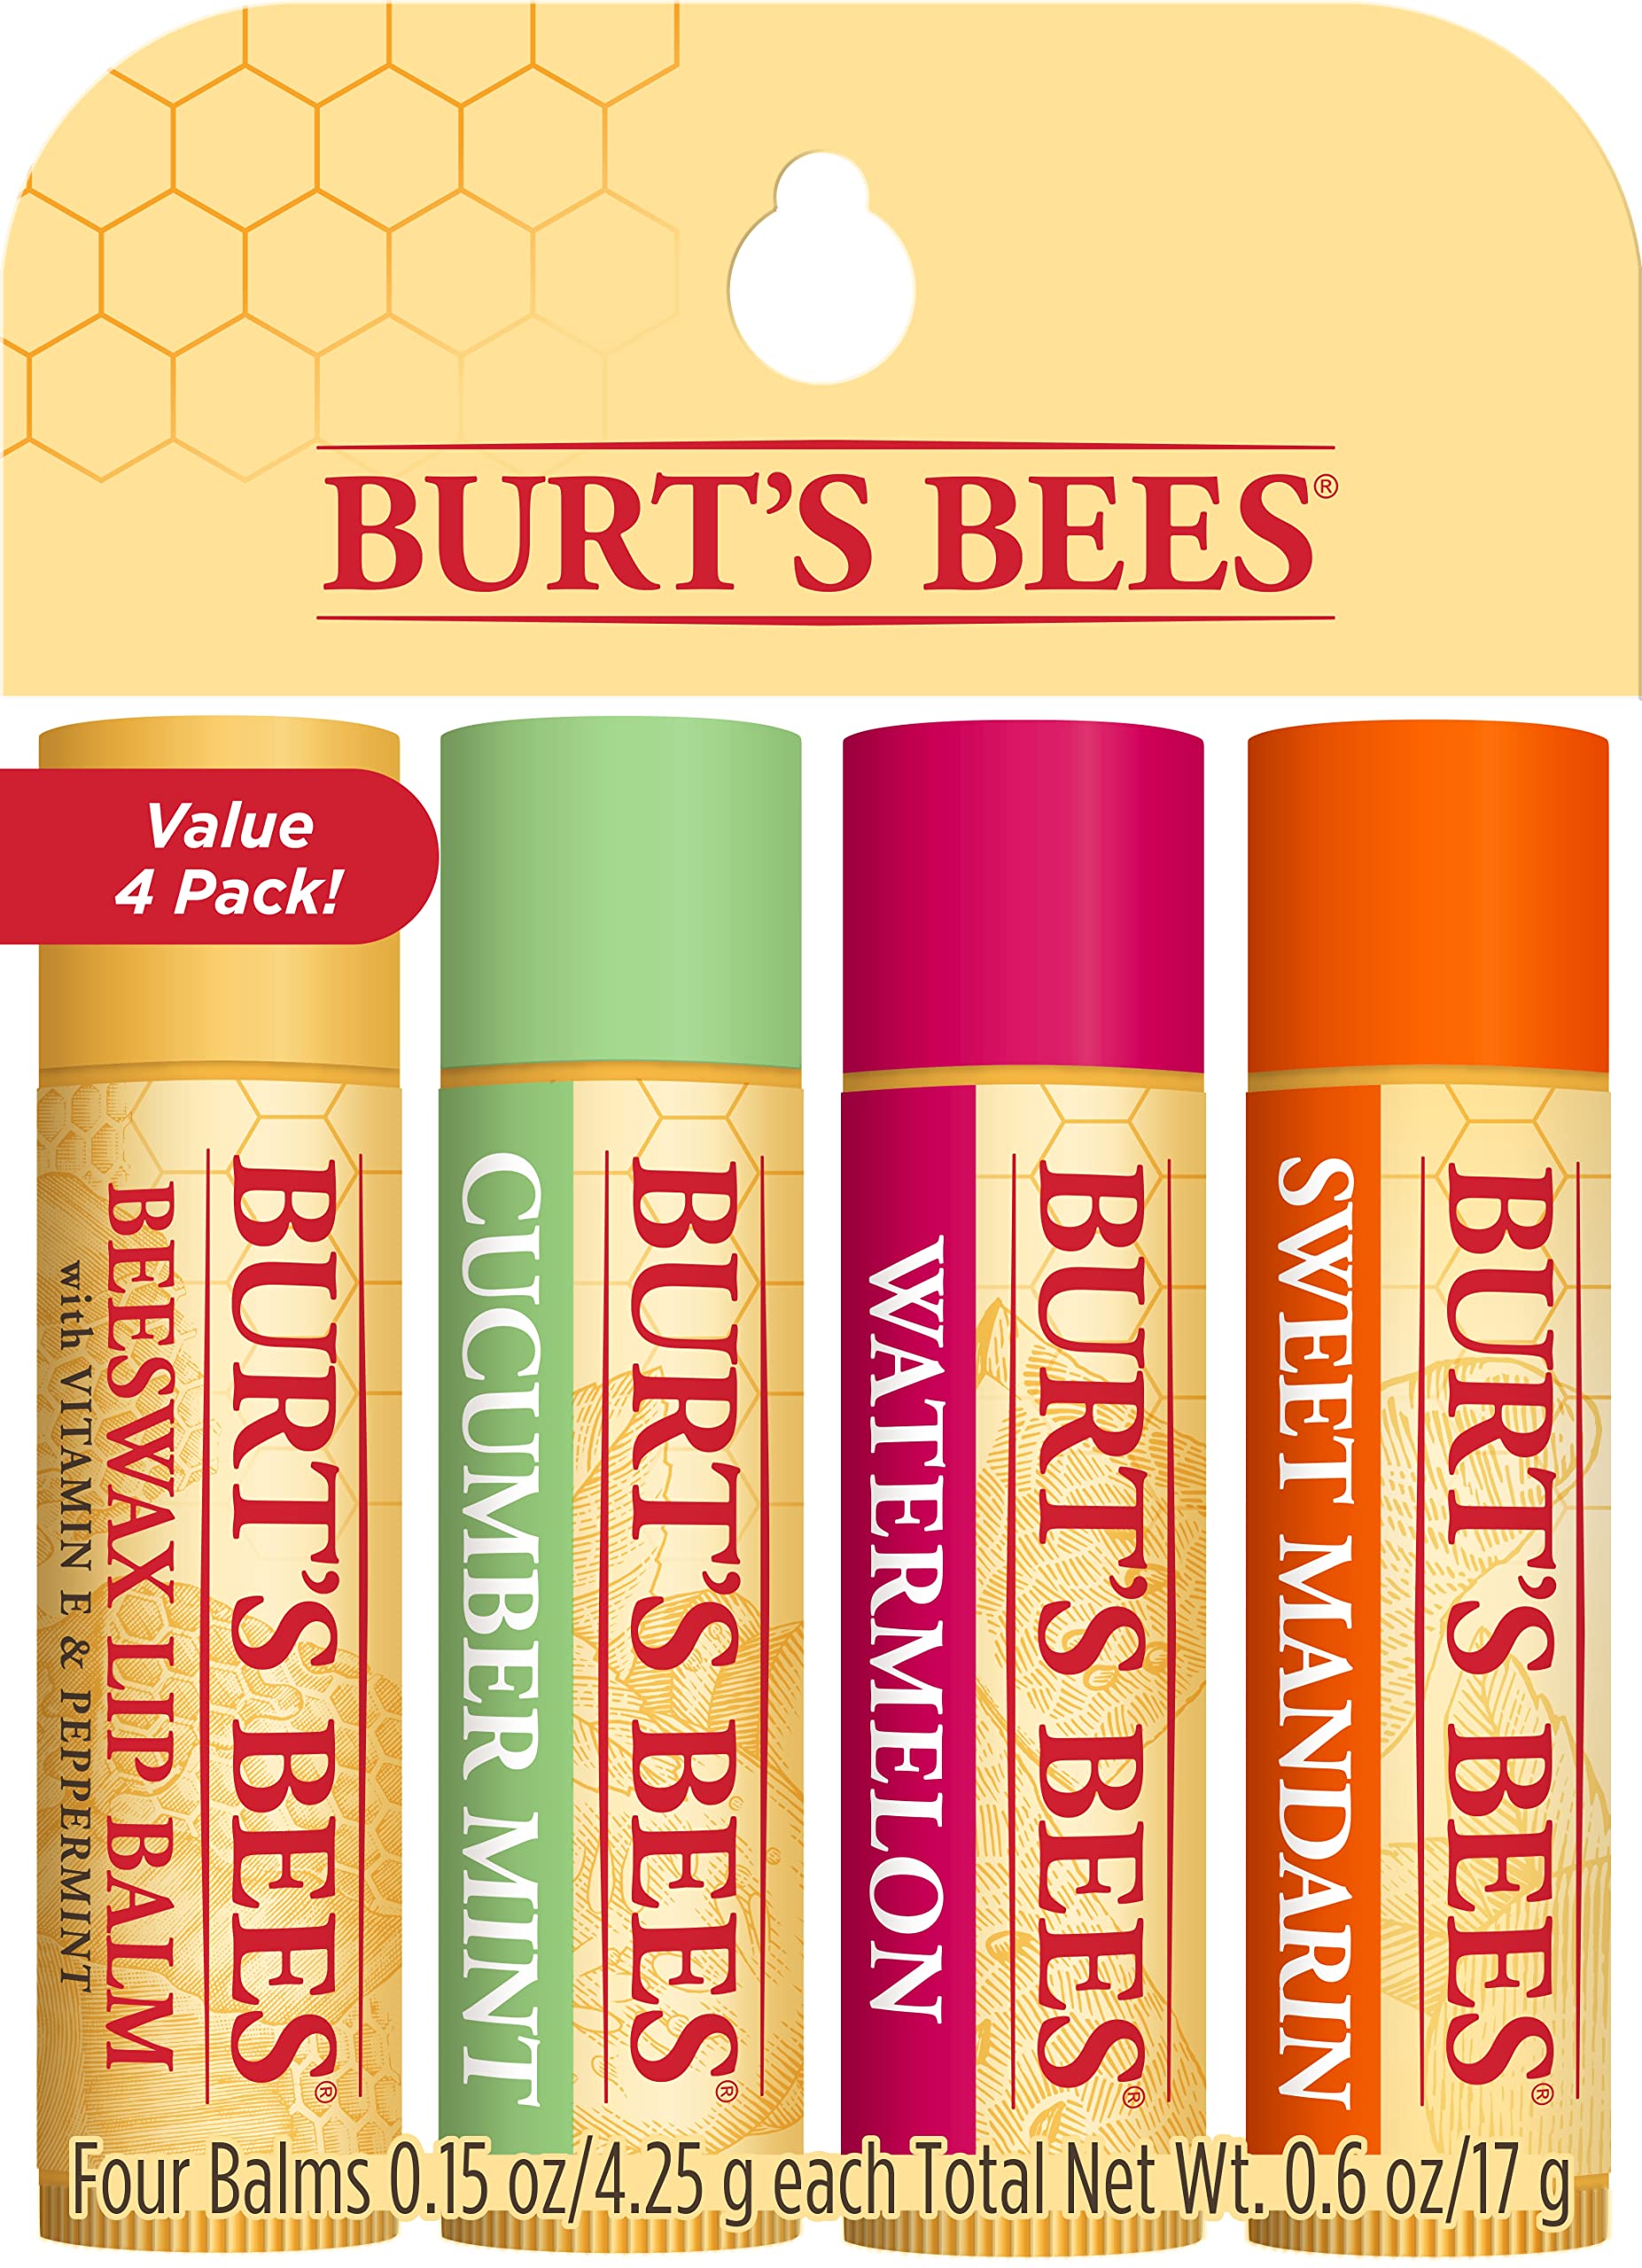  Burt's Bees Moisturizing Lip Balms Freshly Picked 4 Pack 0.15  oz (4.25 g) Each